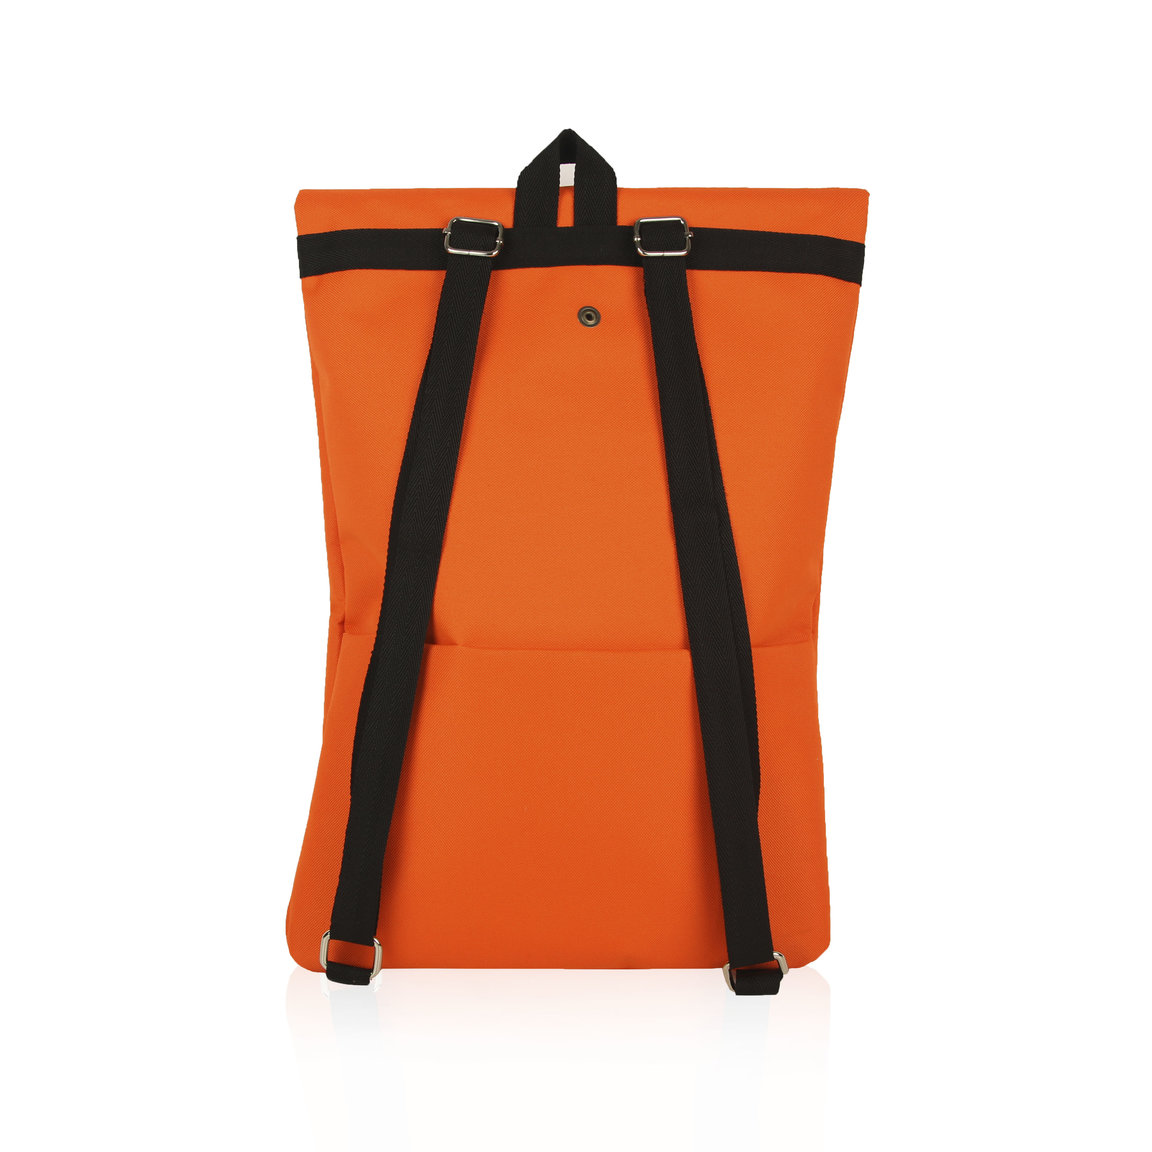 Orange packpack